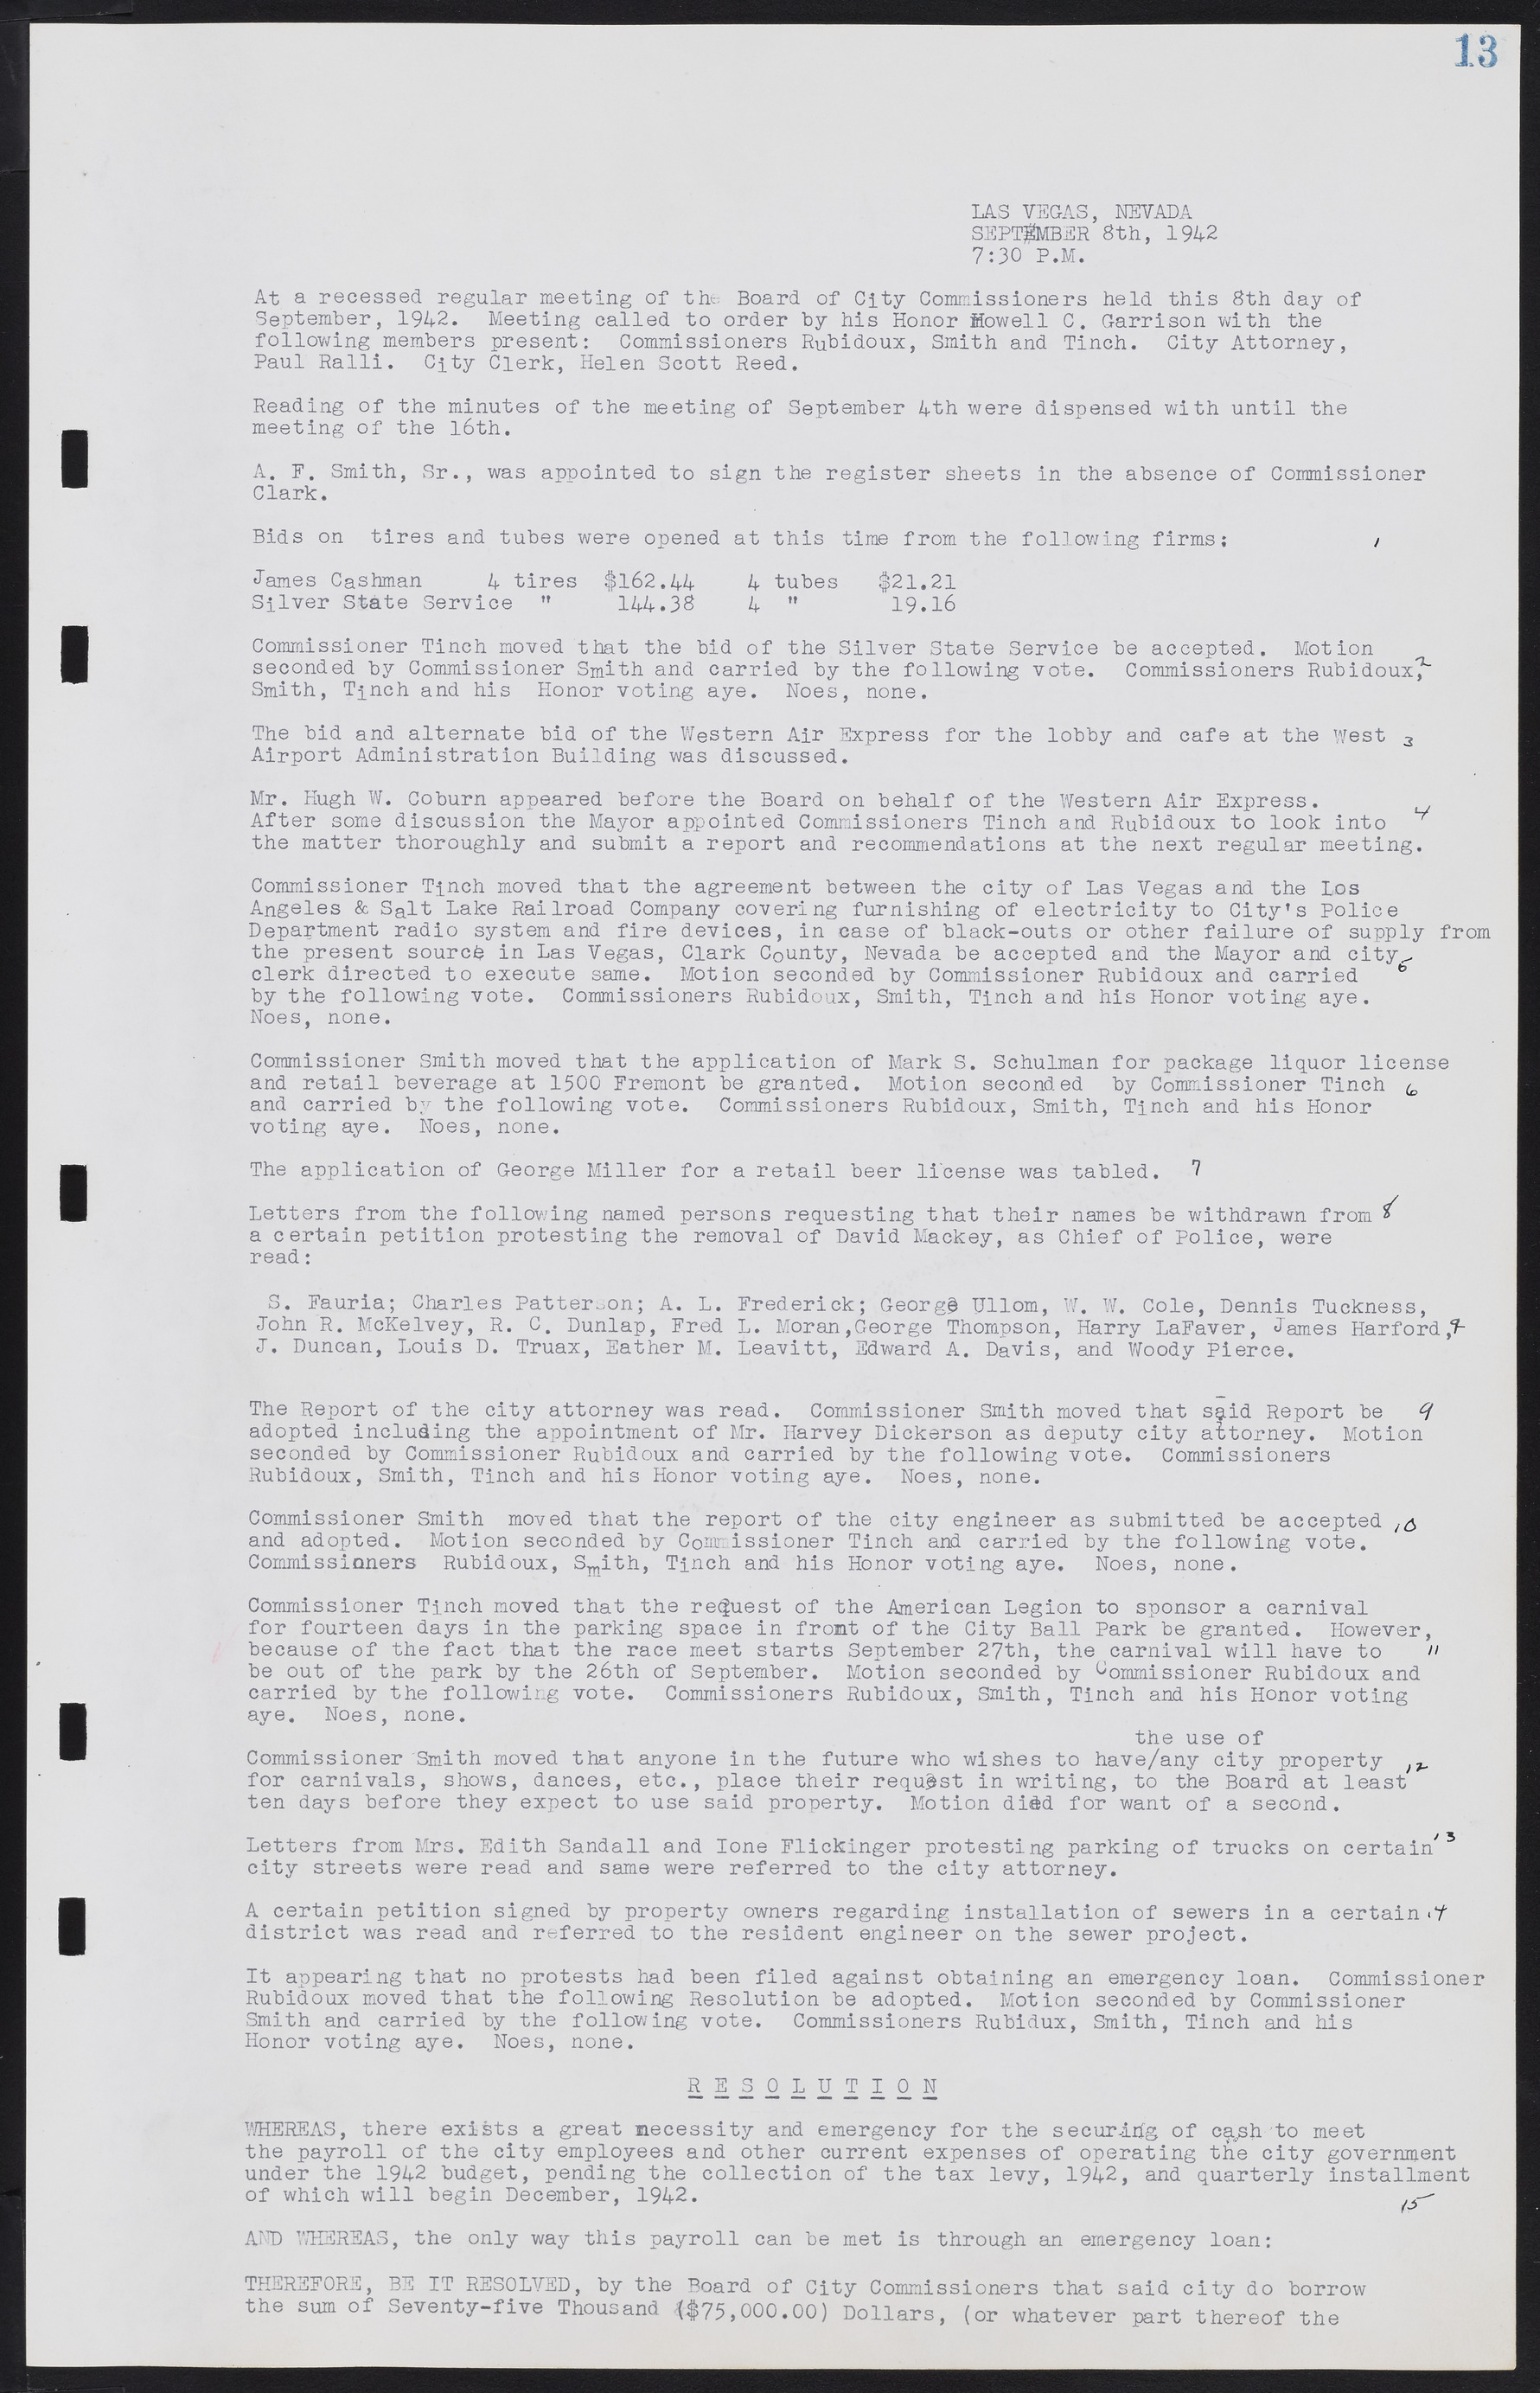 Las Vegas City Commission Minutes, August 11, 1942 to December 30, 1946, lvc000005-21